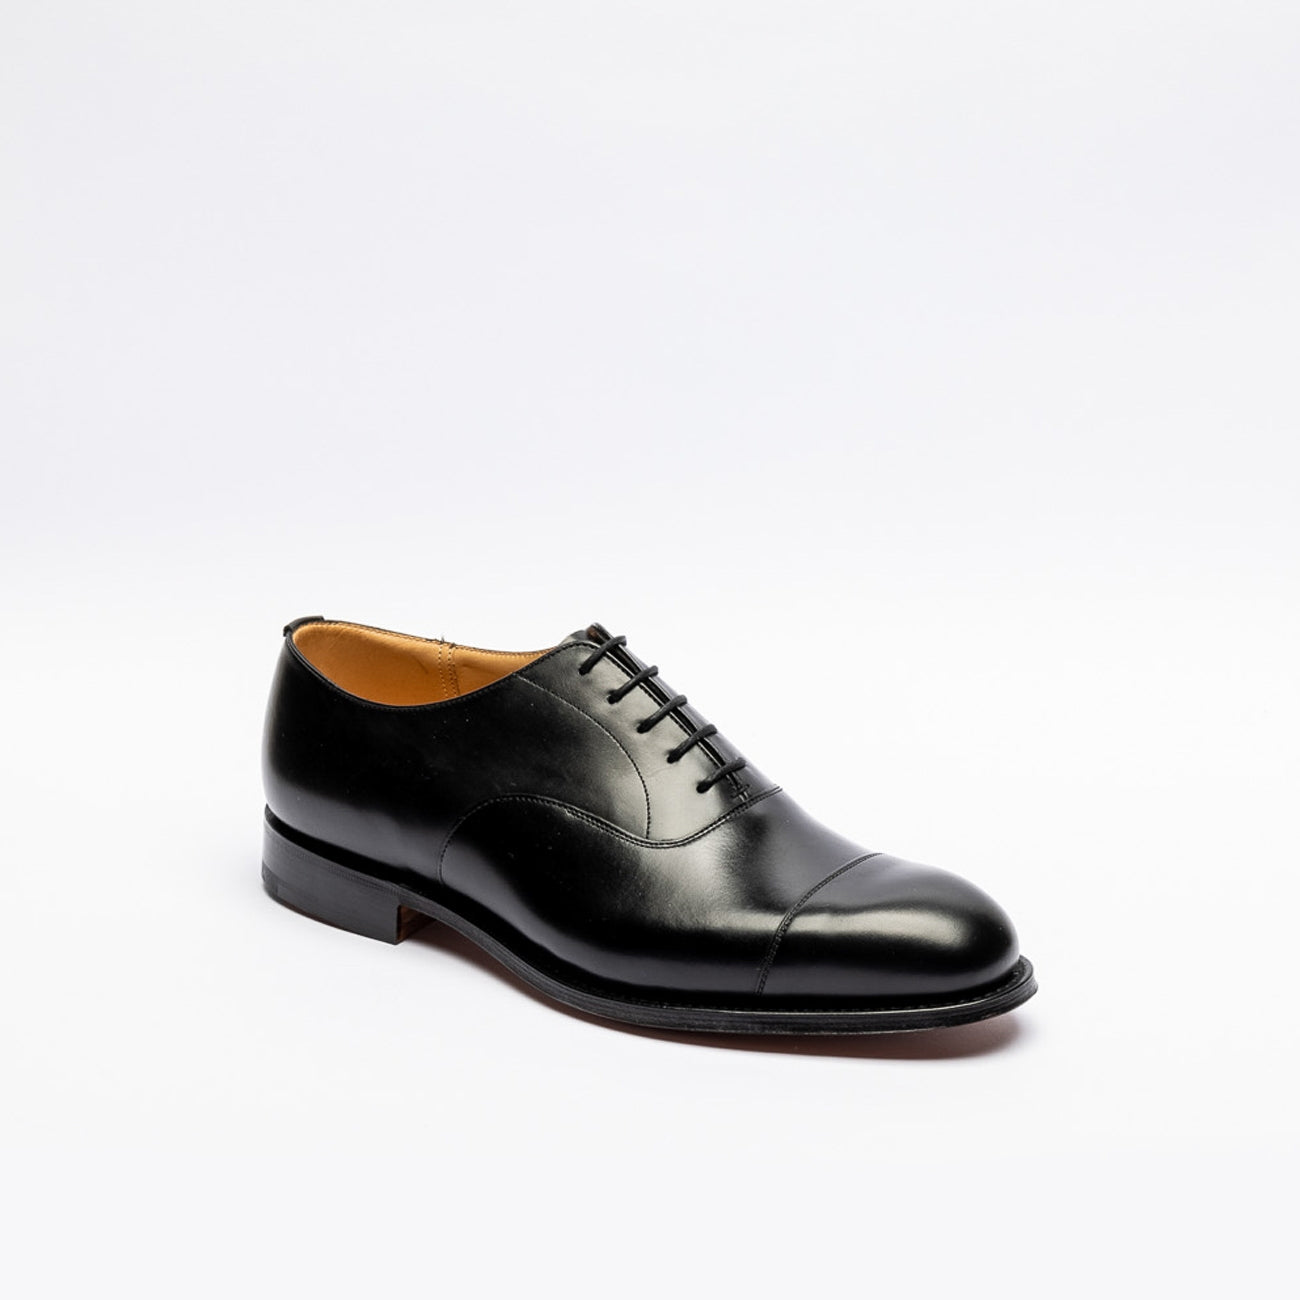 Church's Consul 173 black calf oxford shoe